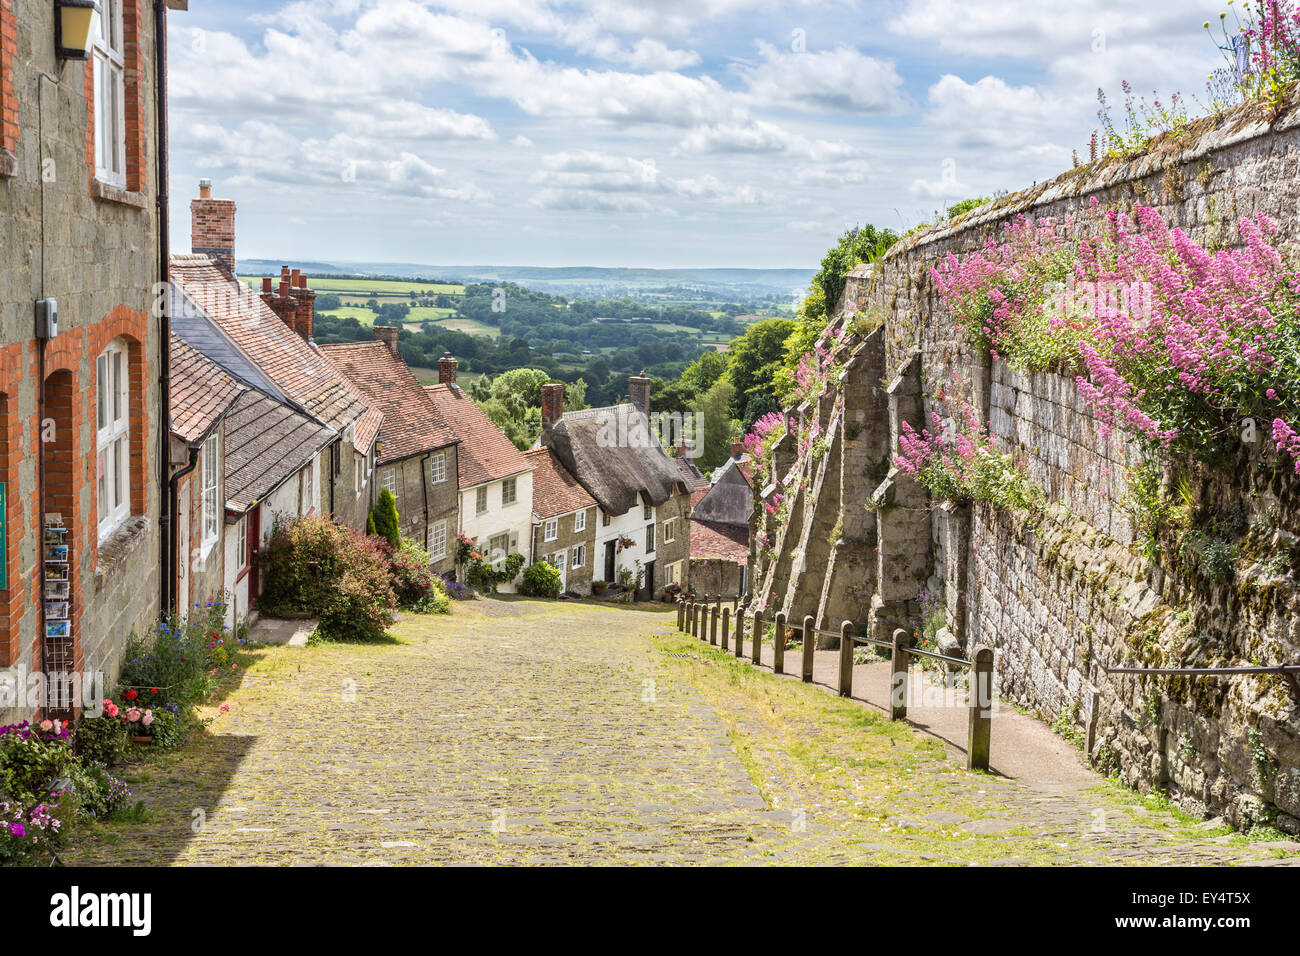 Ferienhäuser auf Gold Hill, Shaftesbury, Dorset, Südwest-England im Sommer, der Speicherort für die klassische Ridley Scott Hovis Schwarzbrot advert Stockfoto